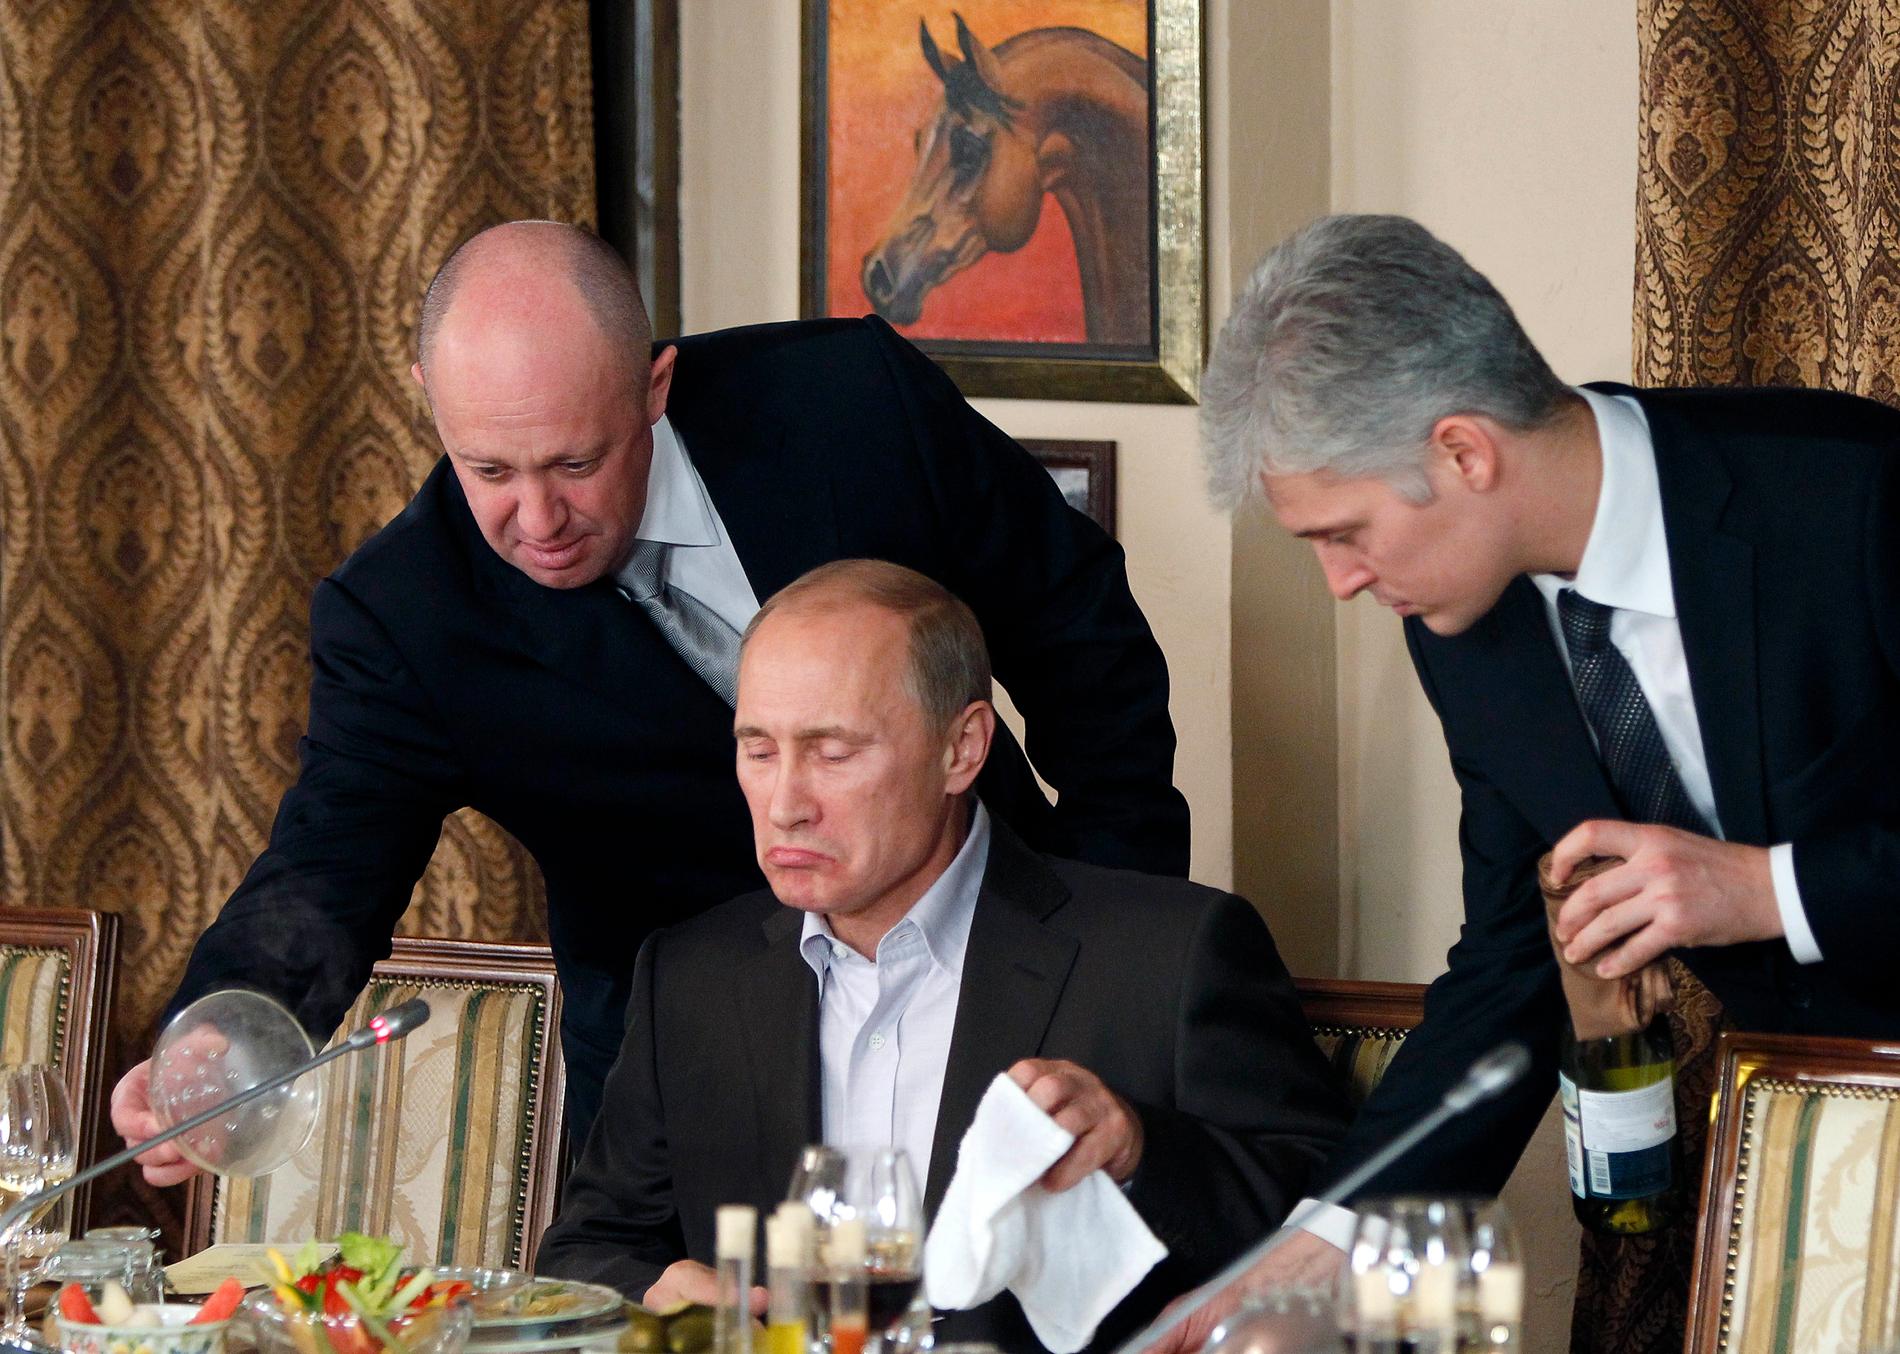 Oligarken Jevgenij Prigozhin jobbade tidigare med catering. Här serverar han Putin en måltid.